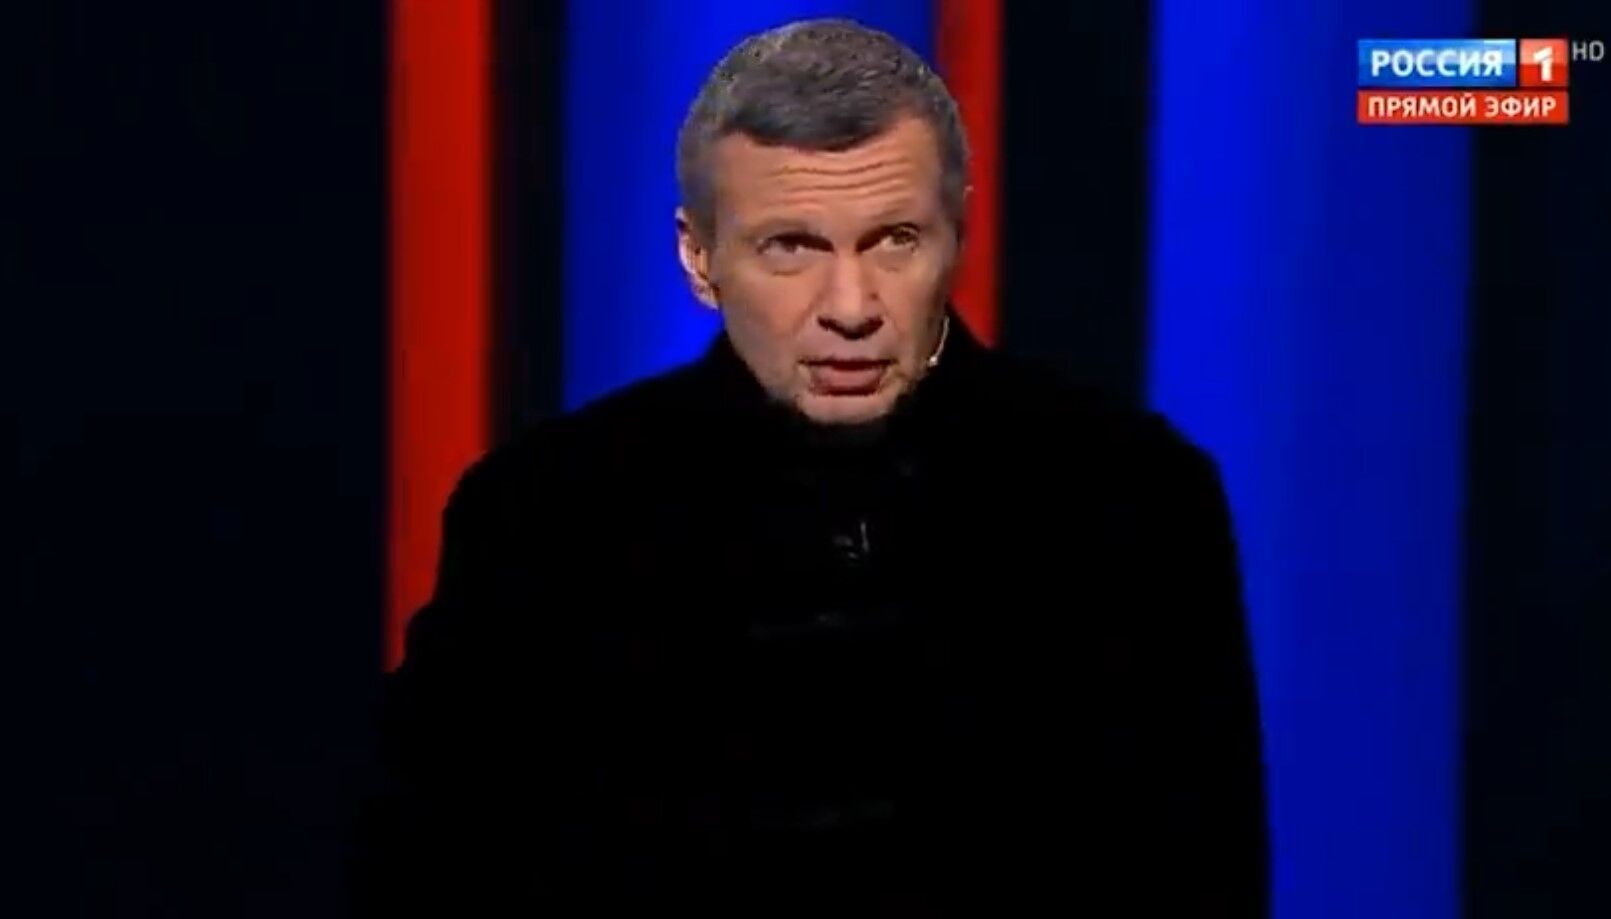 "Надо этот вопрос решить": пропагандист Соловьев призвал бросить на войну против Украины срочников. Видео